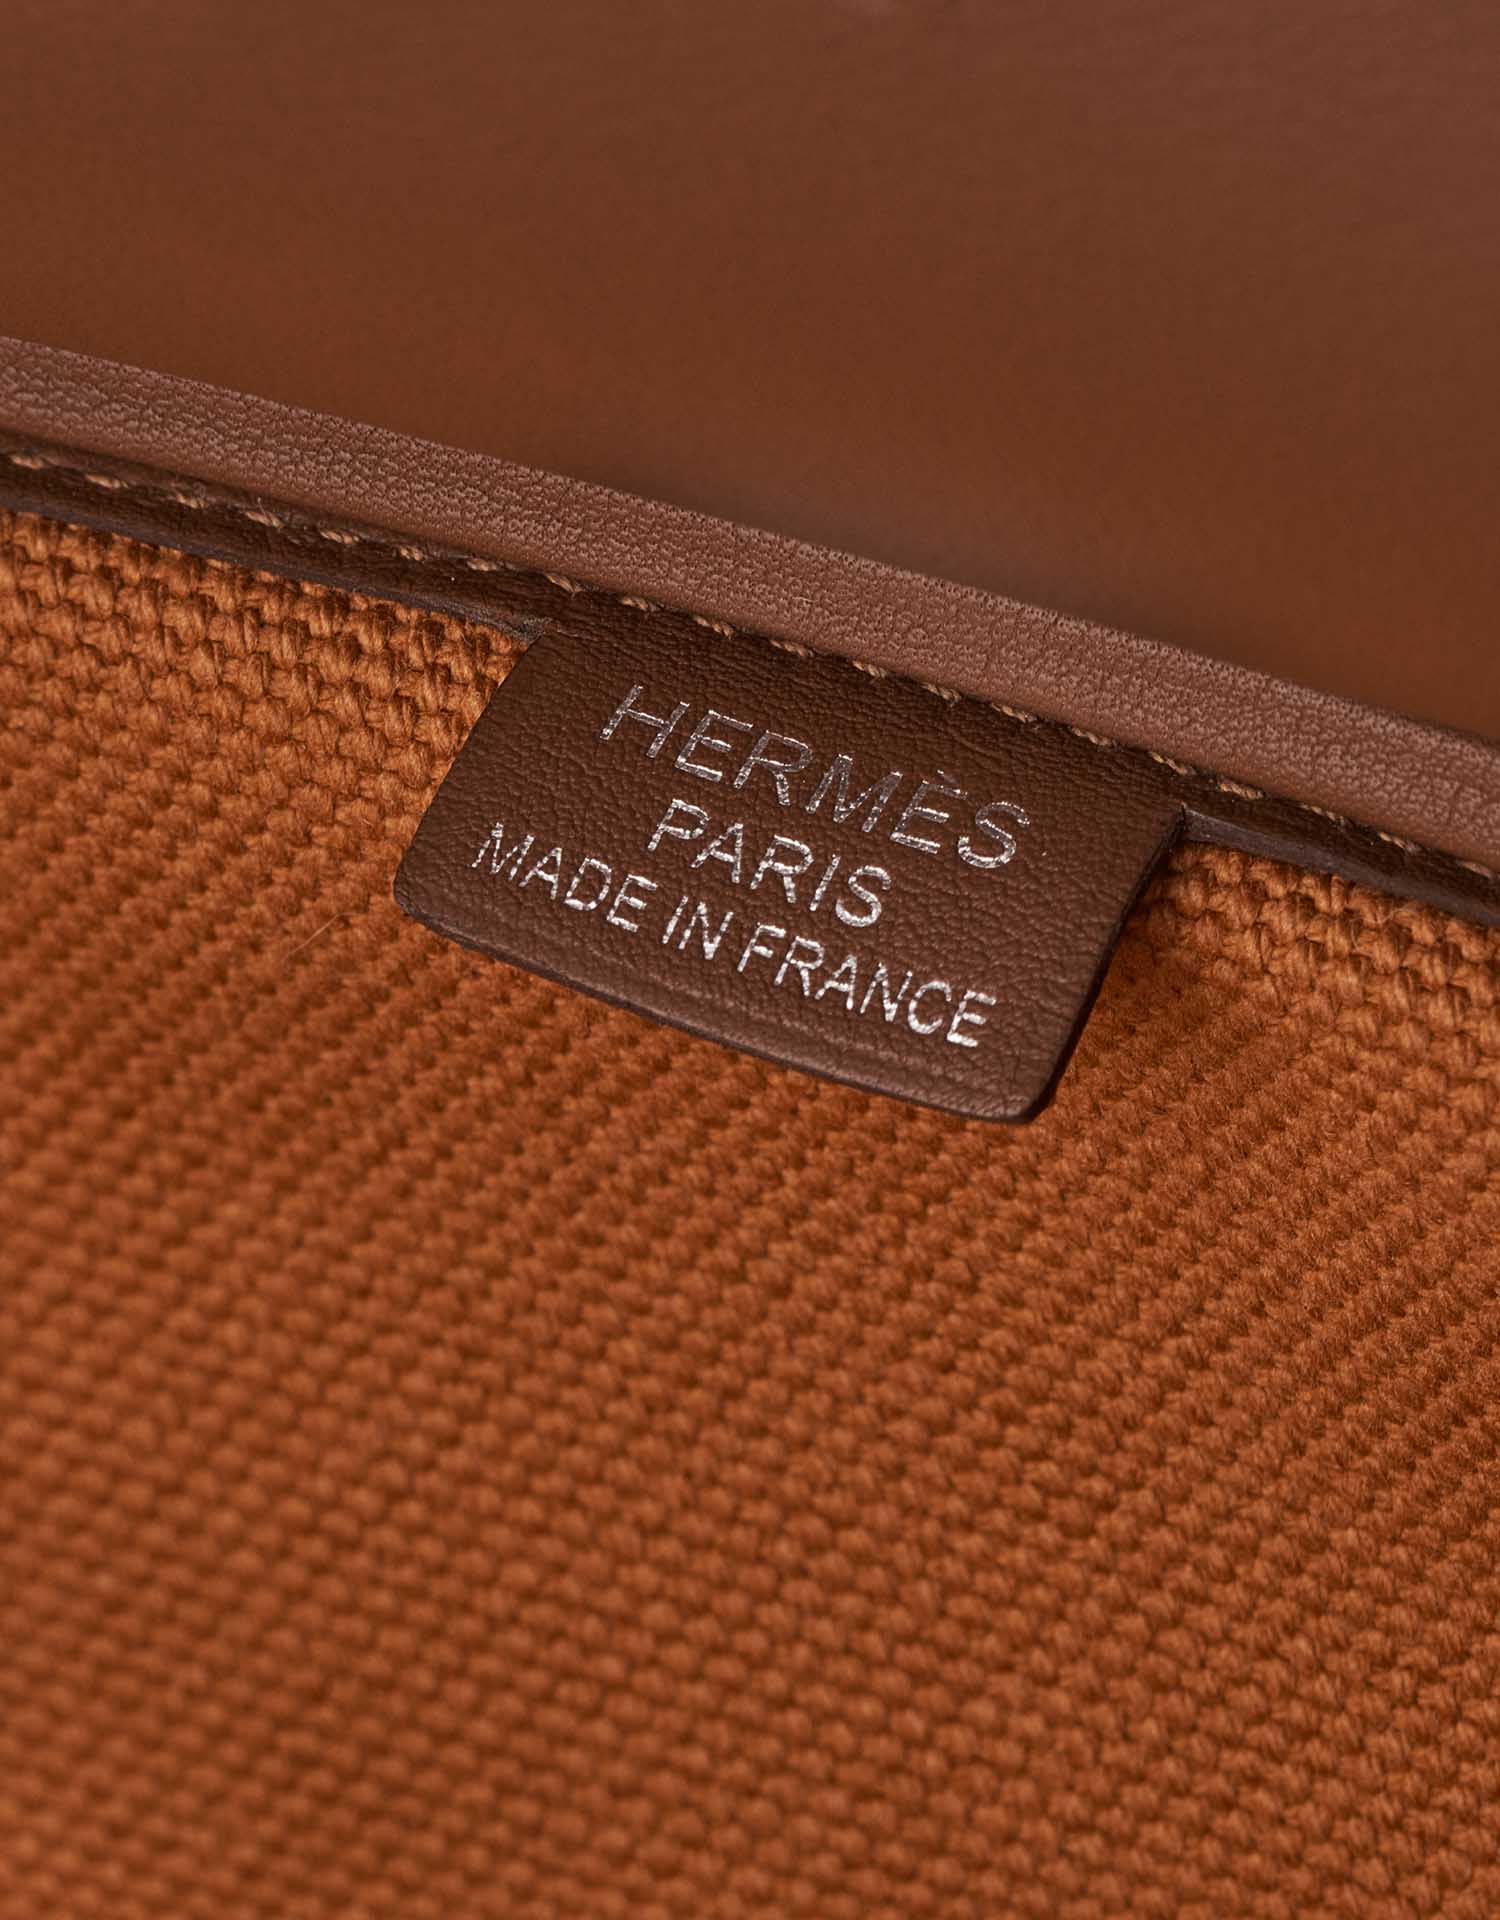 Sac Hermès d'occasion Birkin Cargo 35 Swift / Toile Goeland Marron / Gold Brown Logo | Vendez votre sac de créateur sur Saclab.com